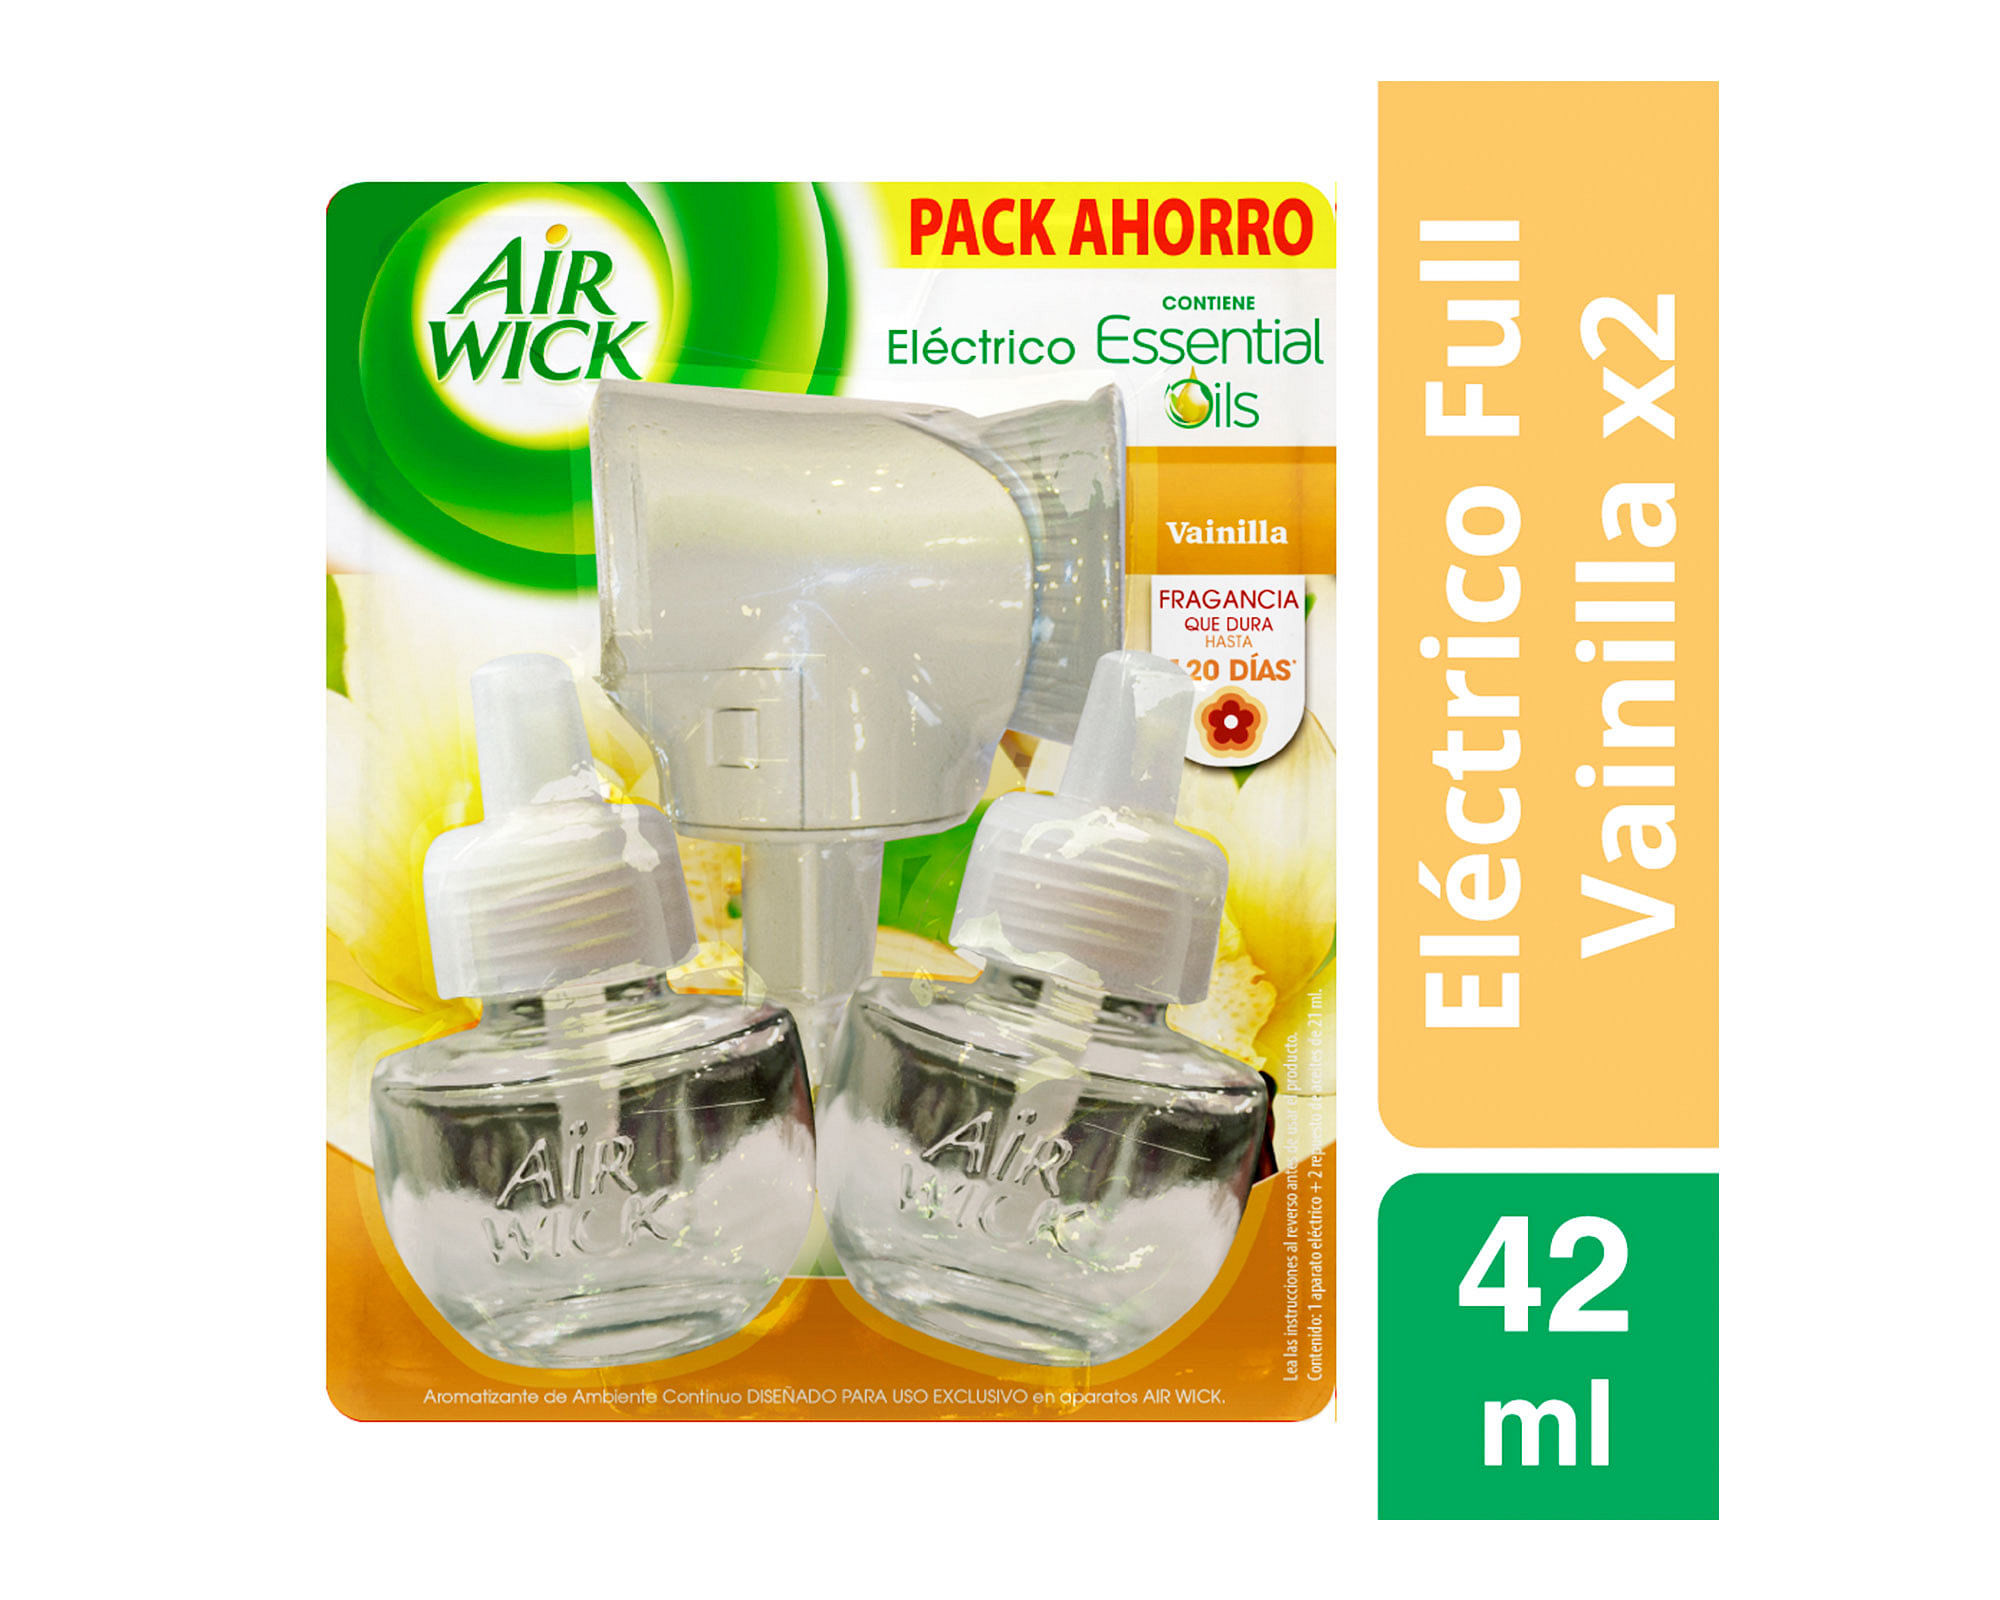 Desodorante Air Wick Electico Aparato+2 repuestos Vainilla 21 ml